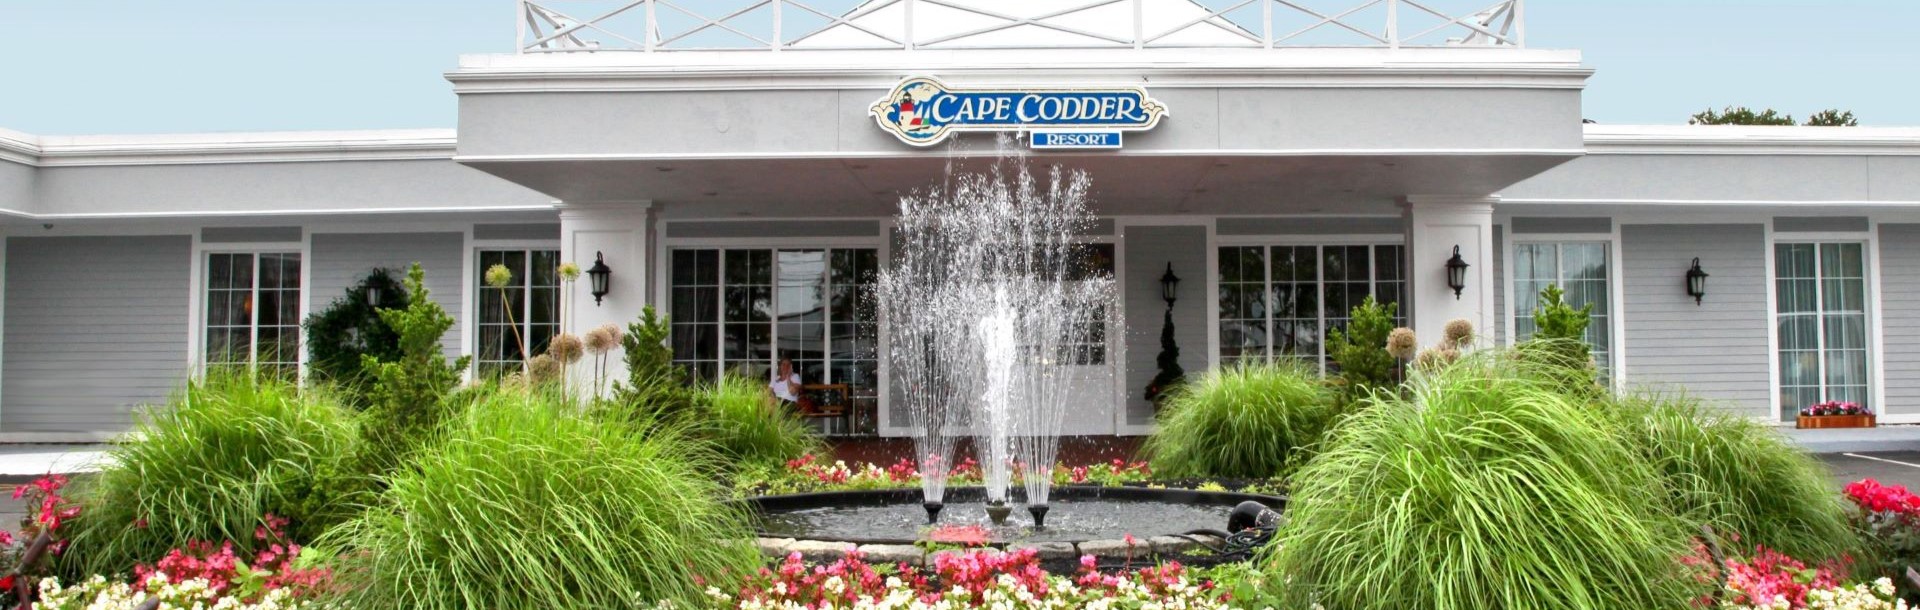 Cape Codder Resort & Spa, Cape Cod 